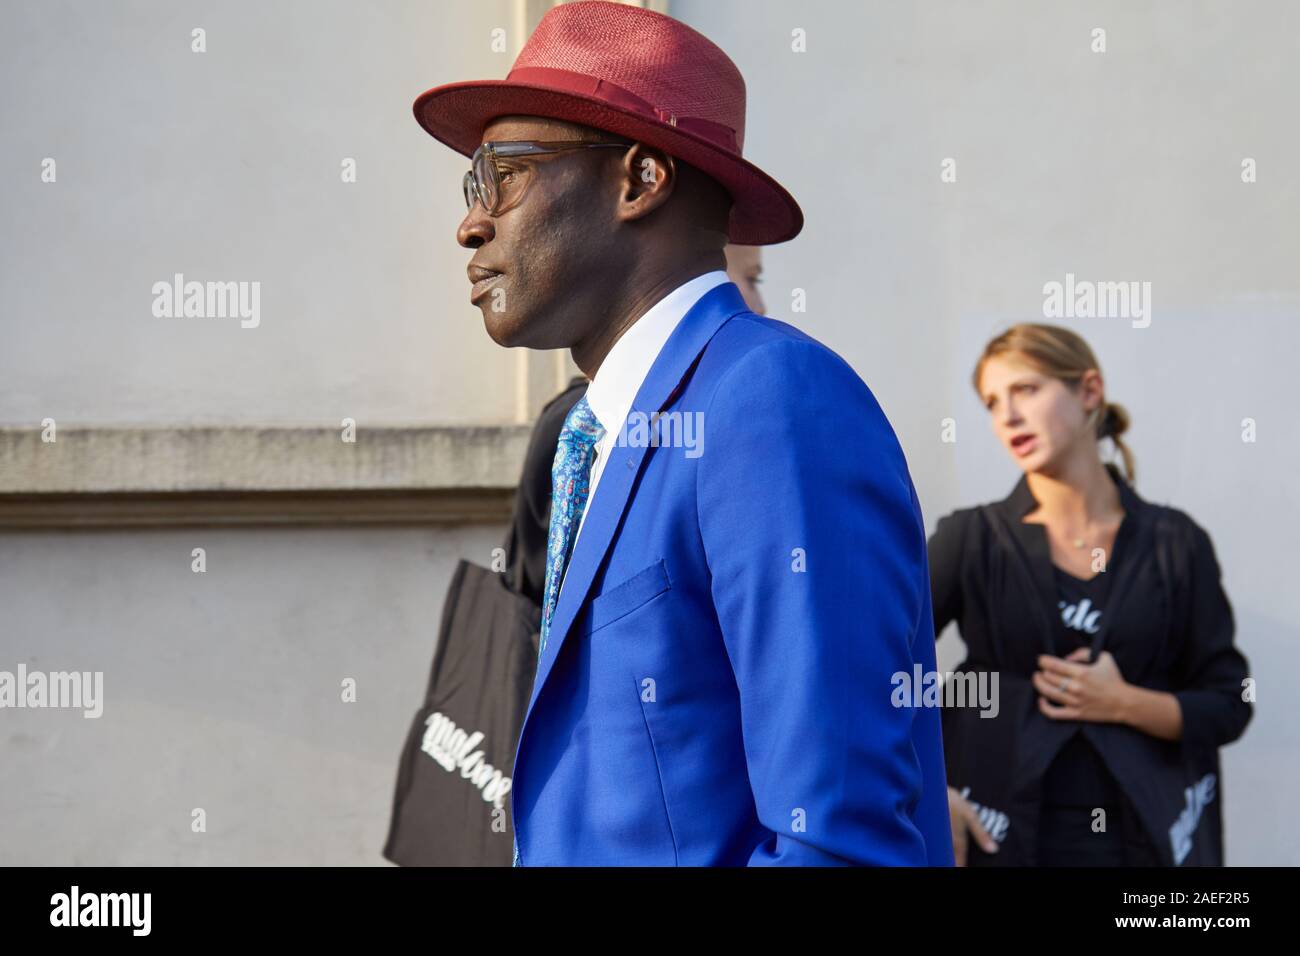 MILAN, ITALIE - 20 septembre 2019 : l'homme avec veste bleue et rouge Borsalino chapeau avant Tods fashion show, Milan Fashion Week street style ? Banque D'Images